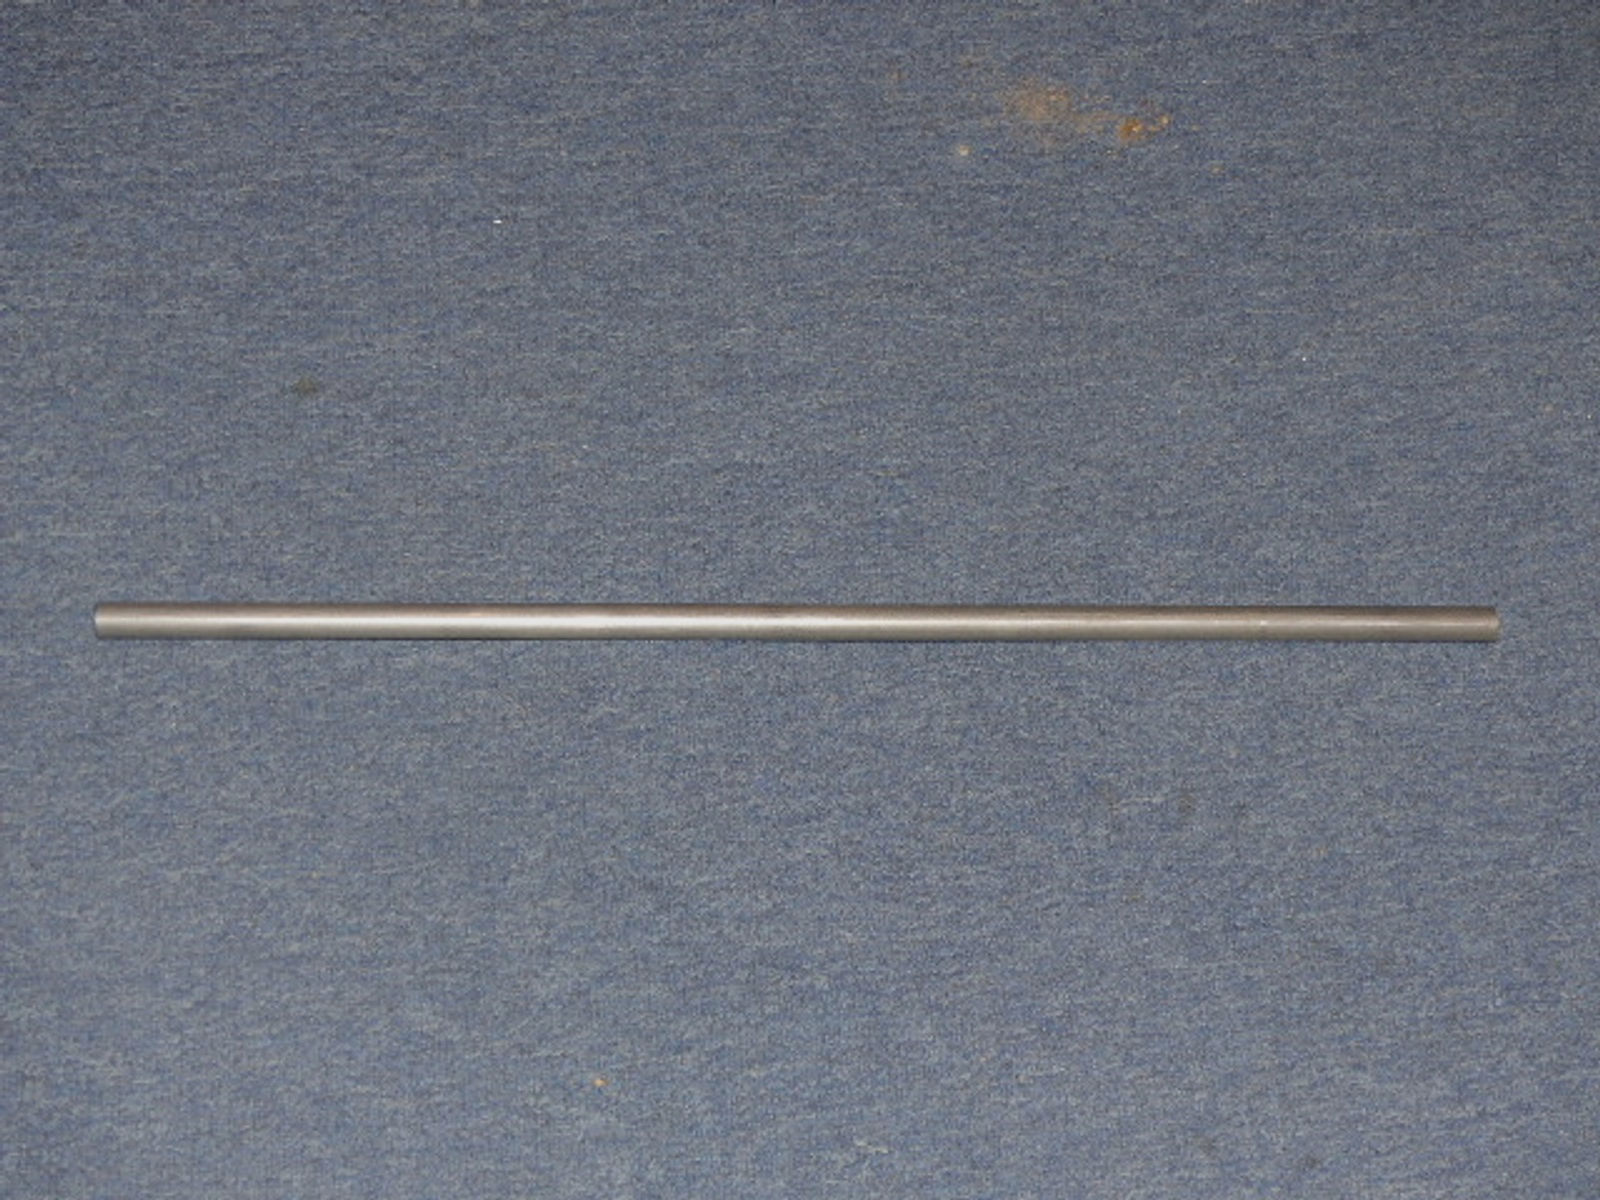 Original Lothar Walther Luftgewehr Laufrohling cal. 9mm oder 7,62mm